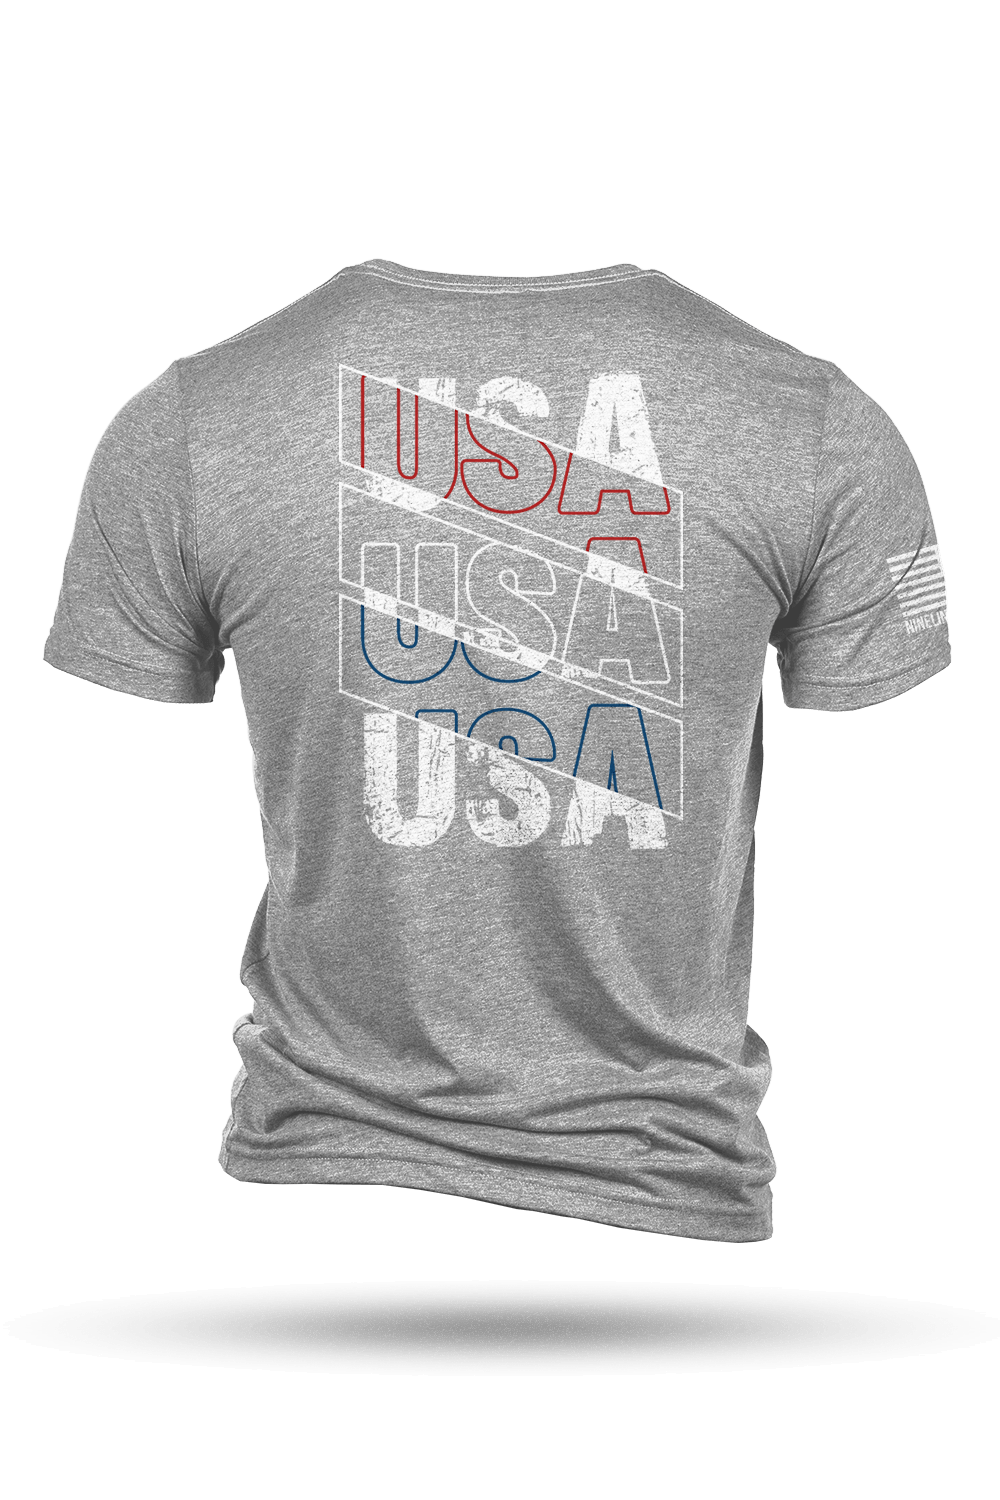 T - Shirt - USA USA USA